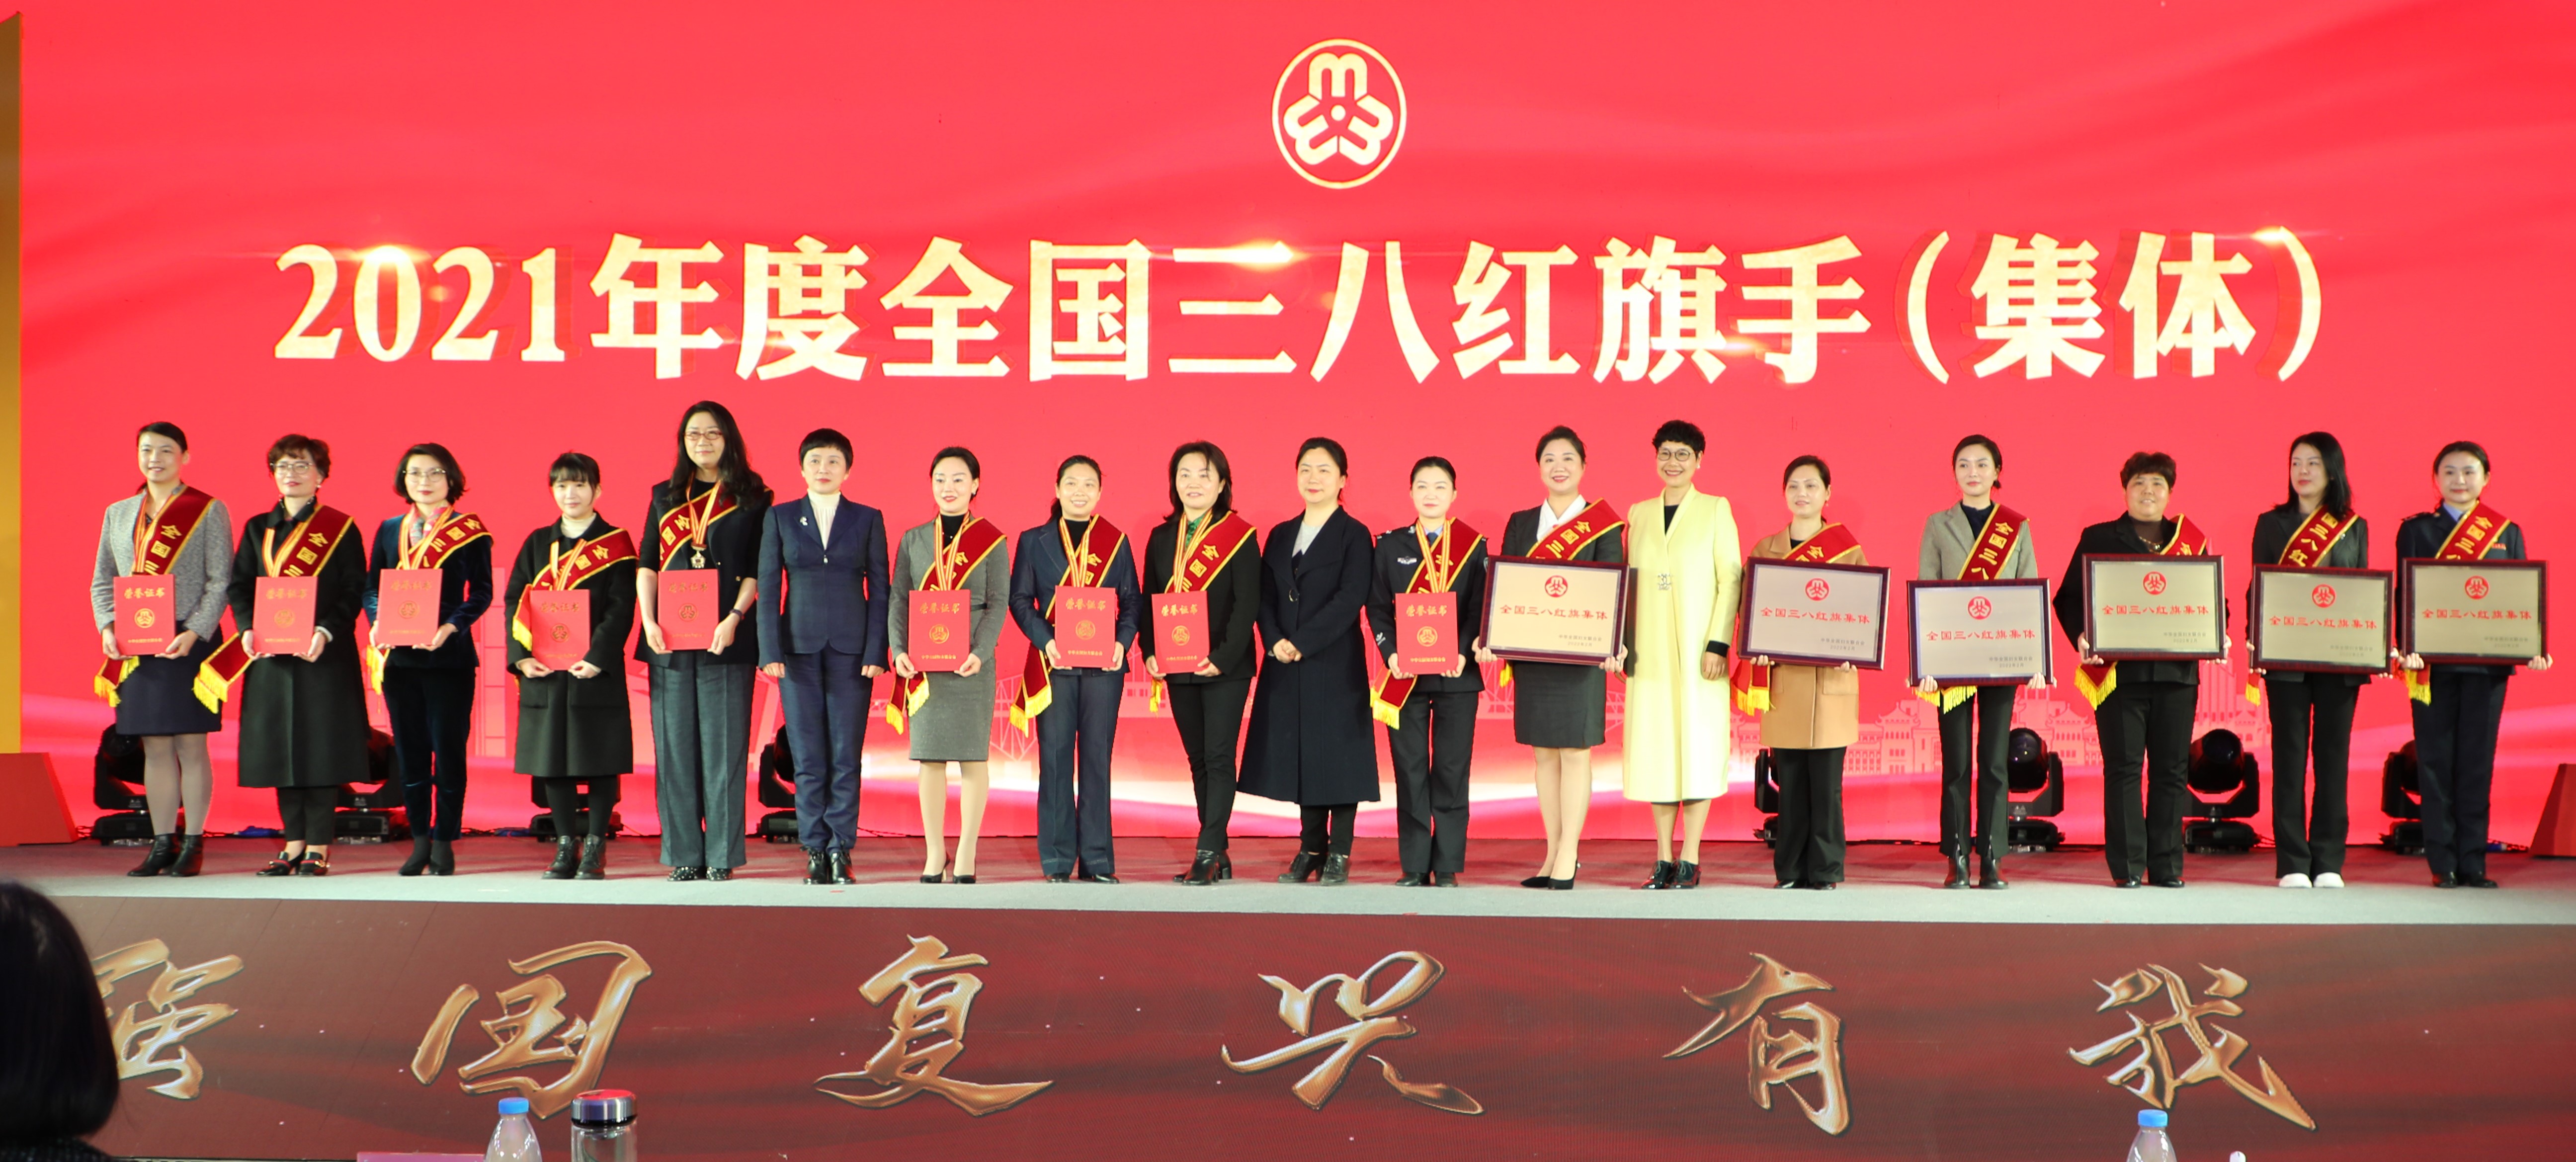 航天云網重慶公司榮獲全國三八紅旗集體